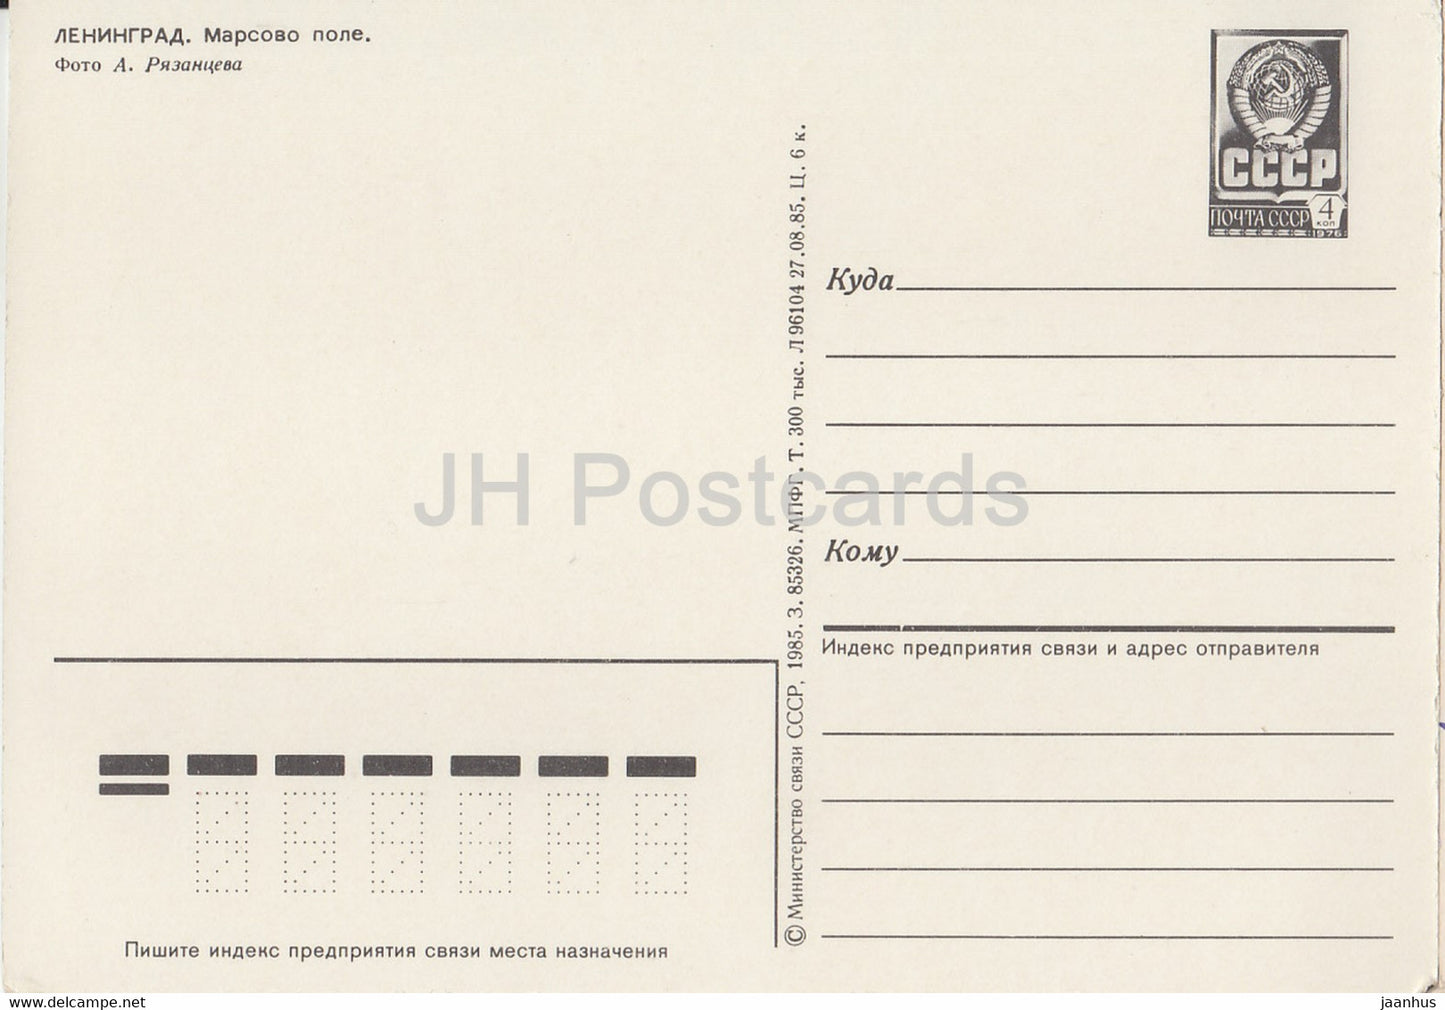 Leningrad - St Petersburg - Field of Mars - bus - postal stationery - 1985 - Russia USSR - unused